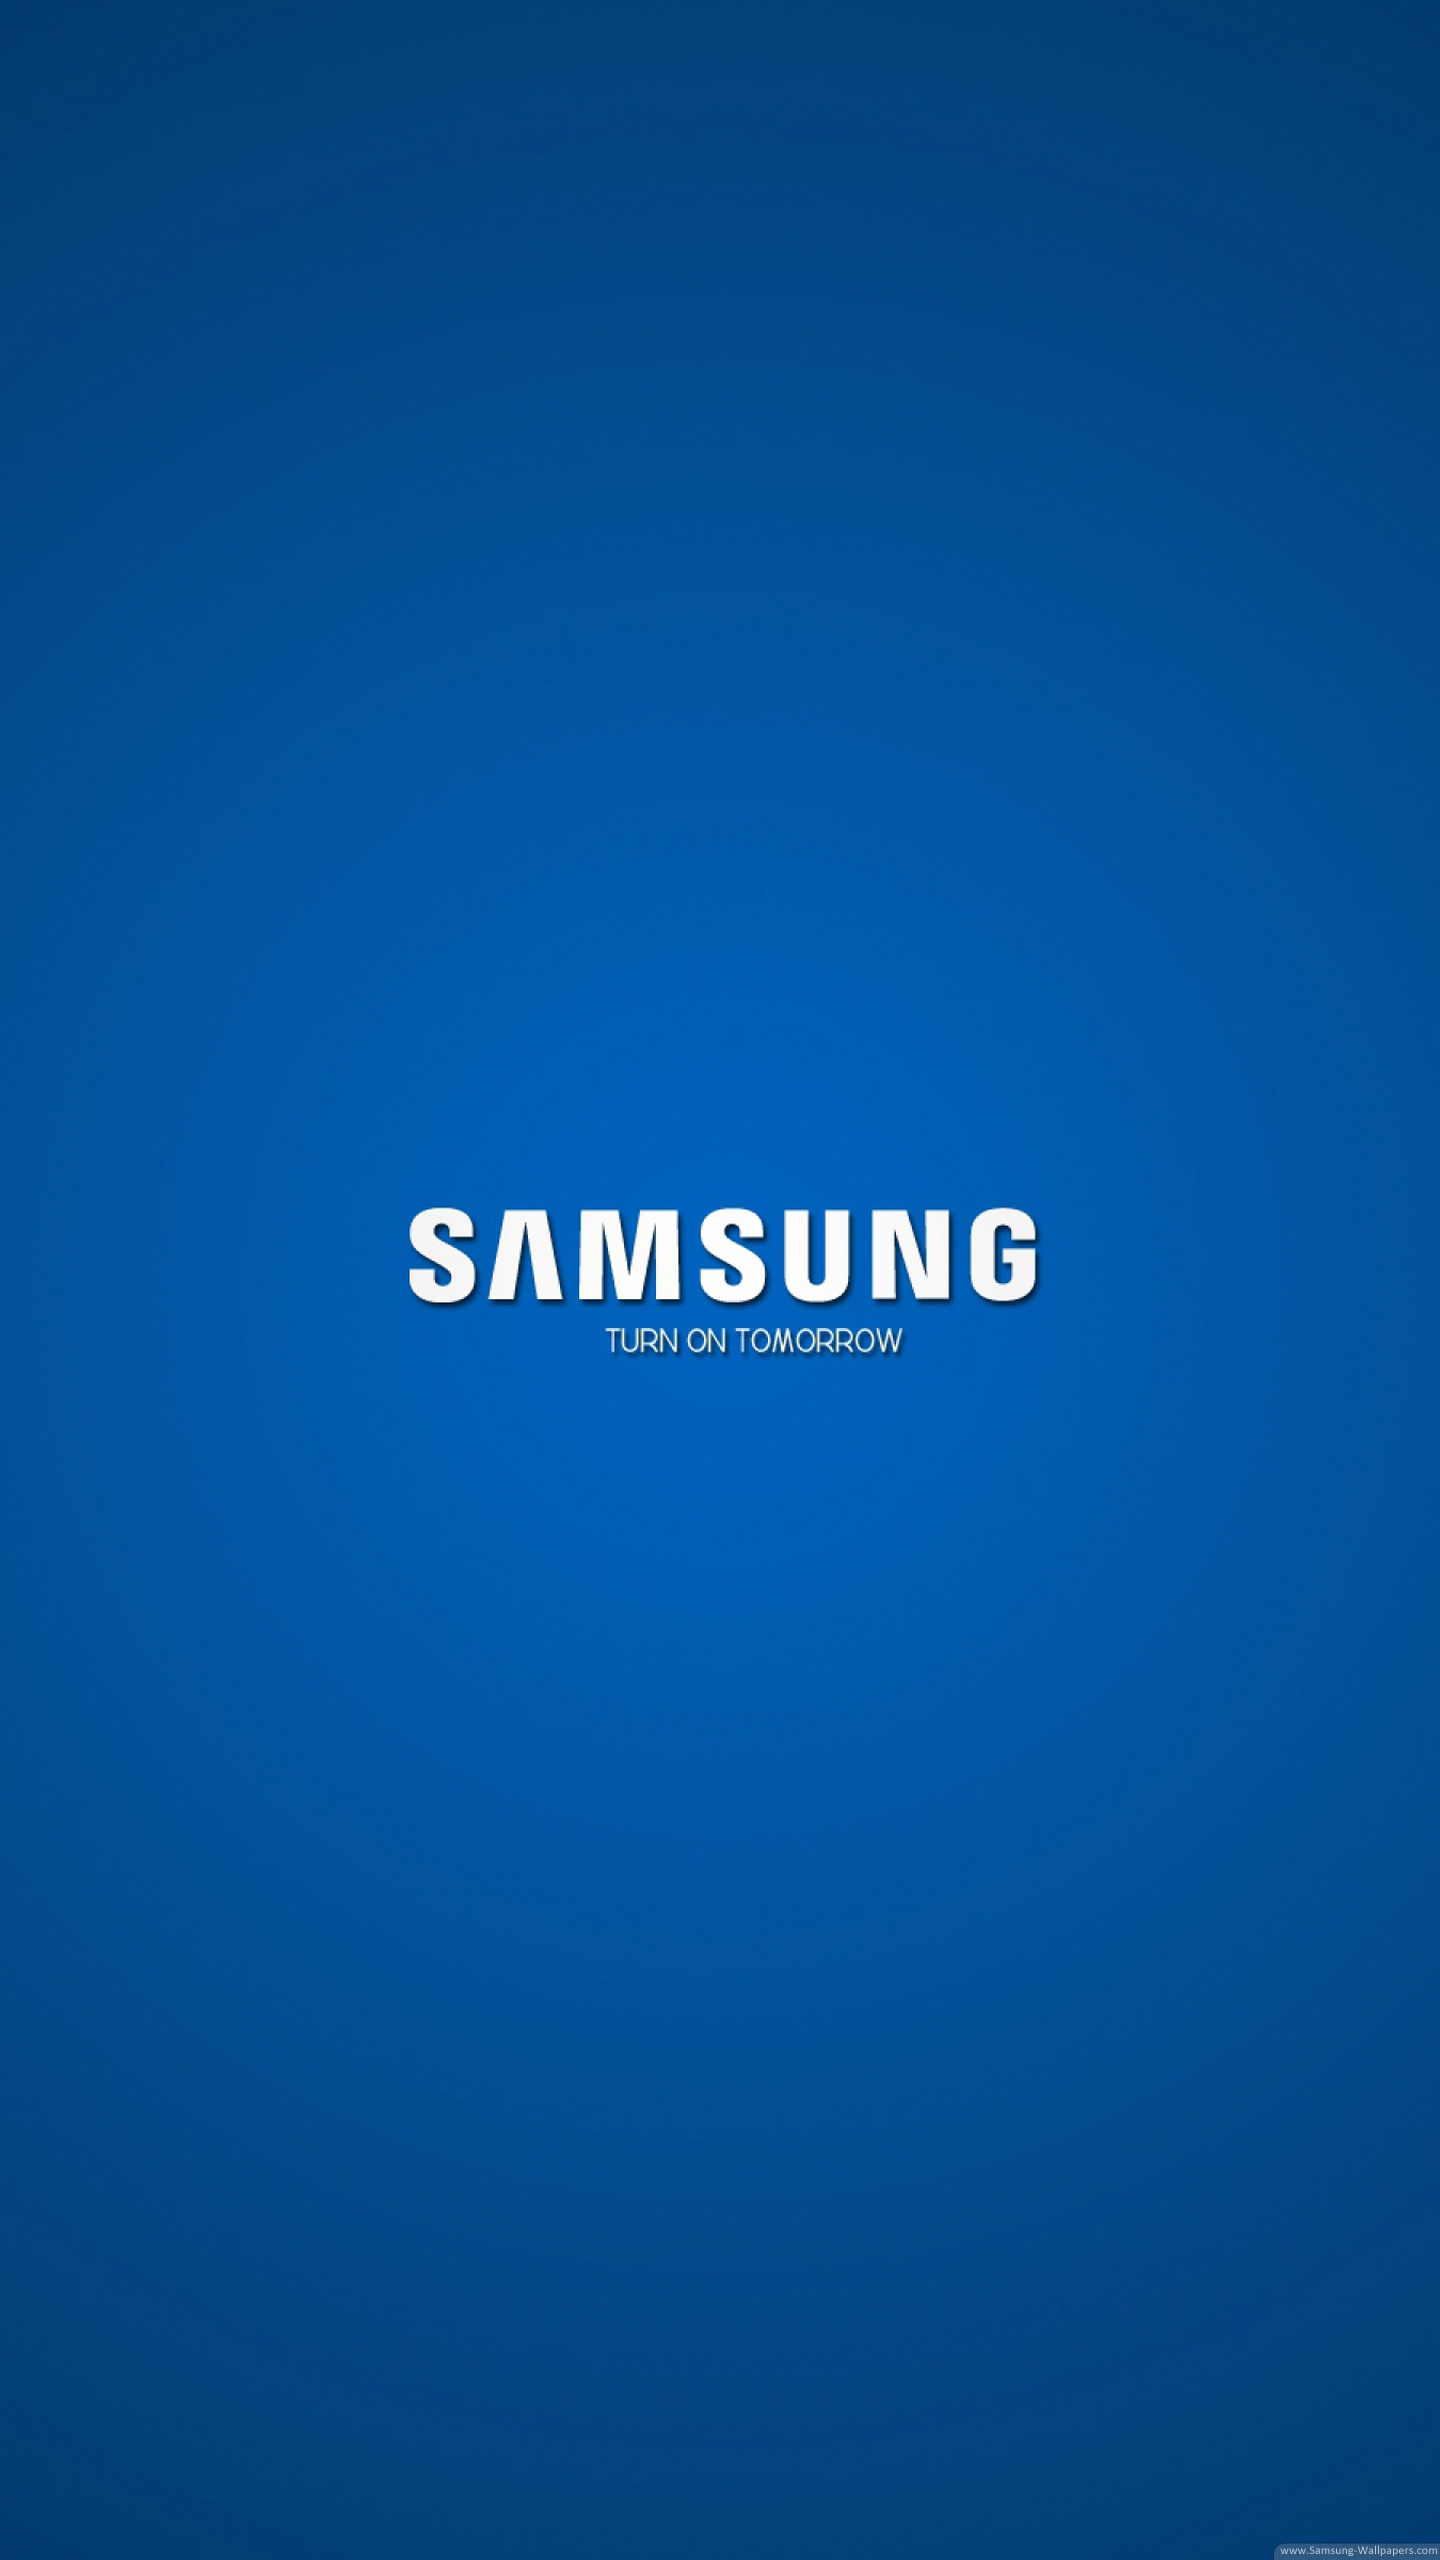 SAMSUNG三星集团手机品牌logo及vi设计_电子产品品牌设计-力英品牌设计顾问公司